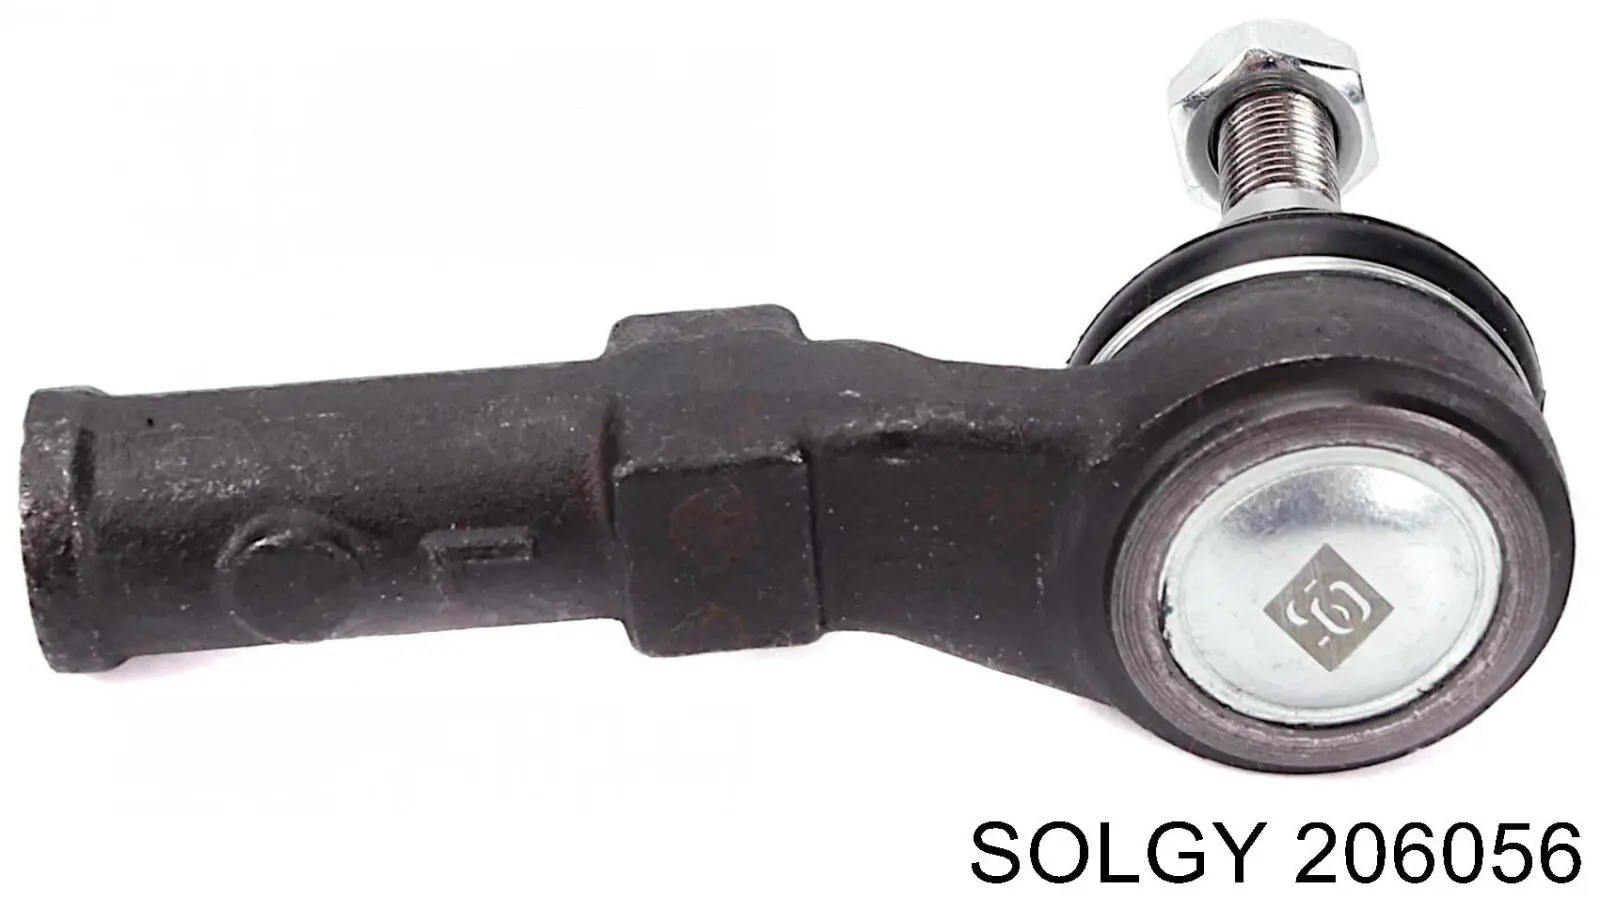 206056 Solgy ponta externa da barra de direção